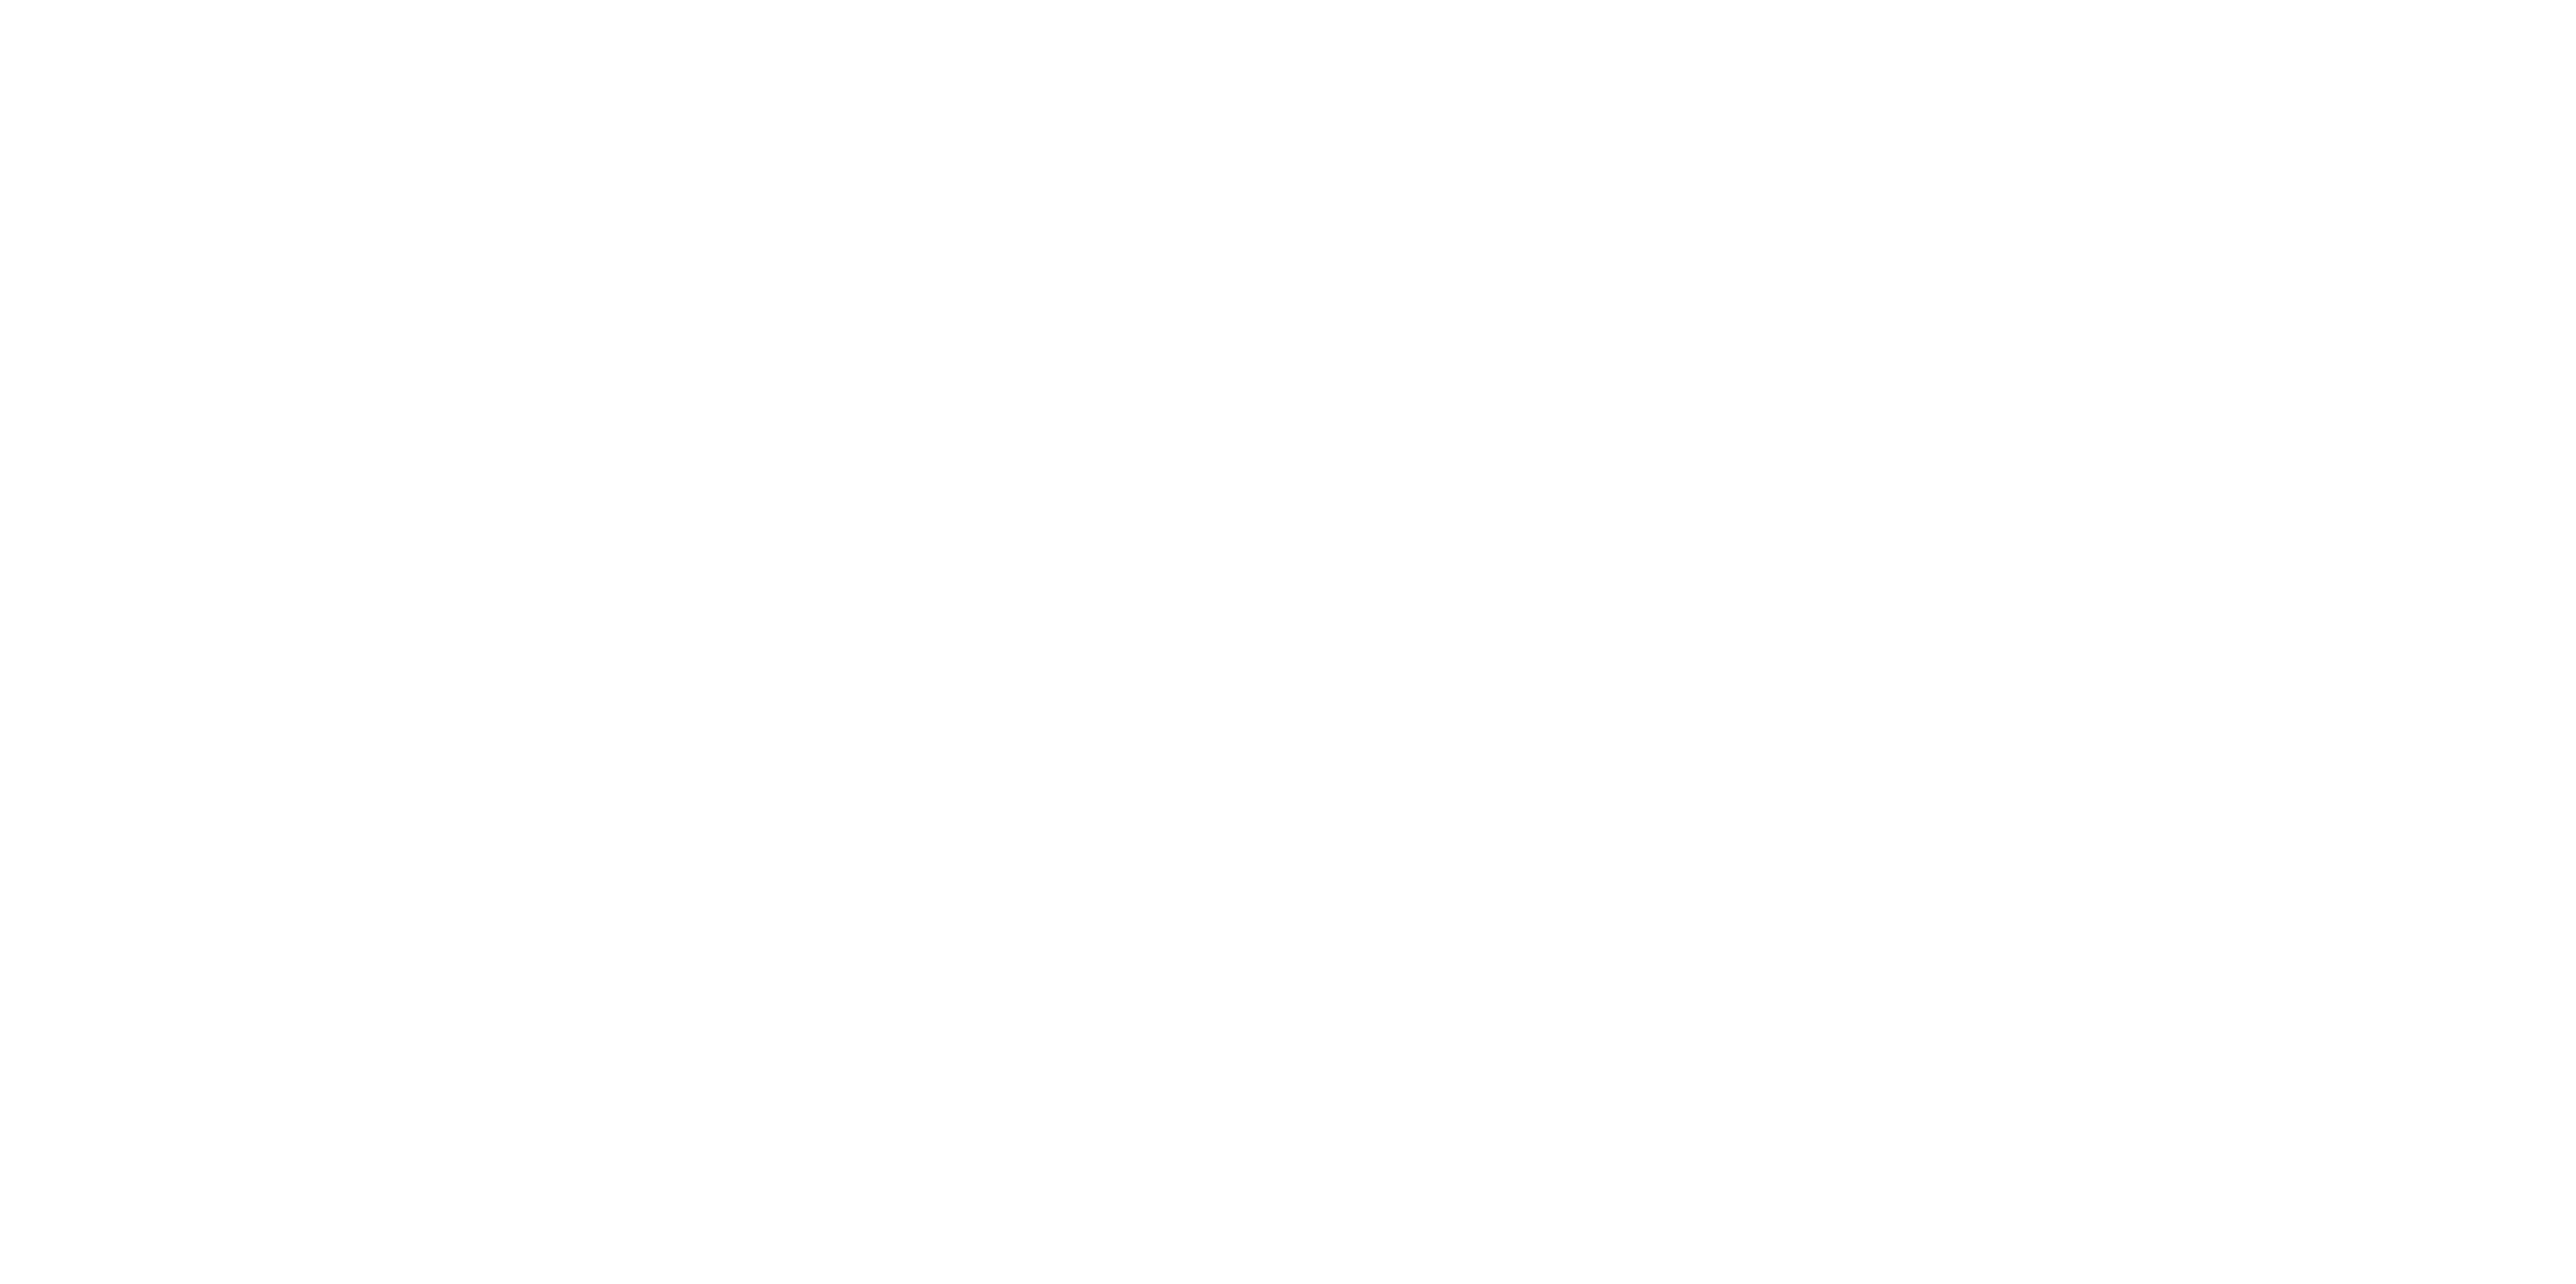 Jogo Mída Física Medal of Honor Original para computador PC - Ea